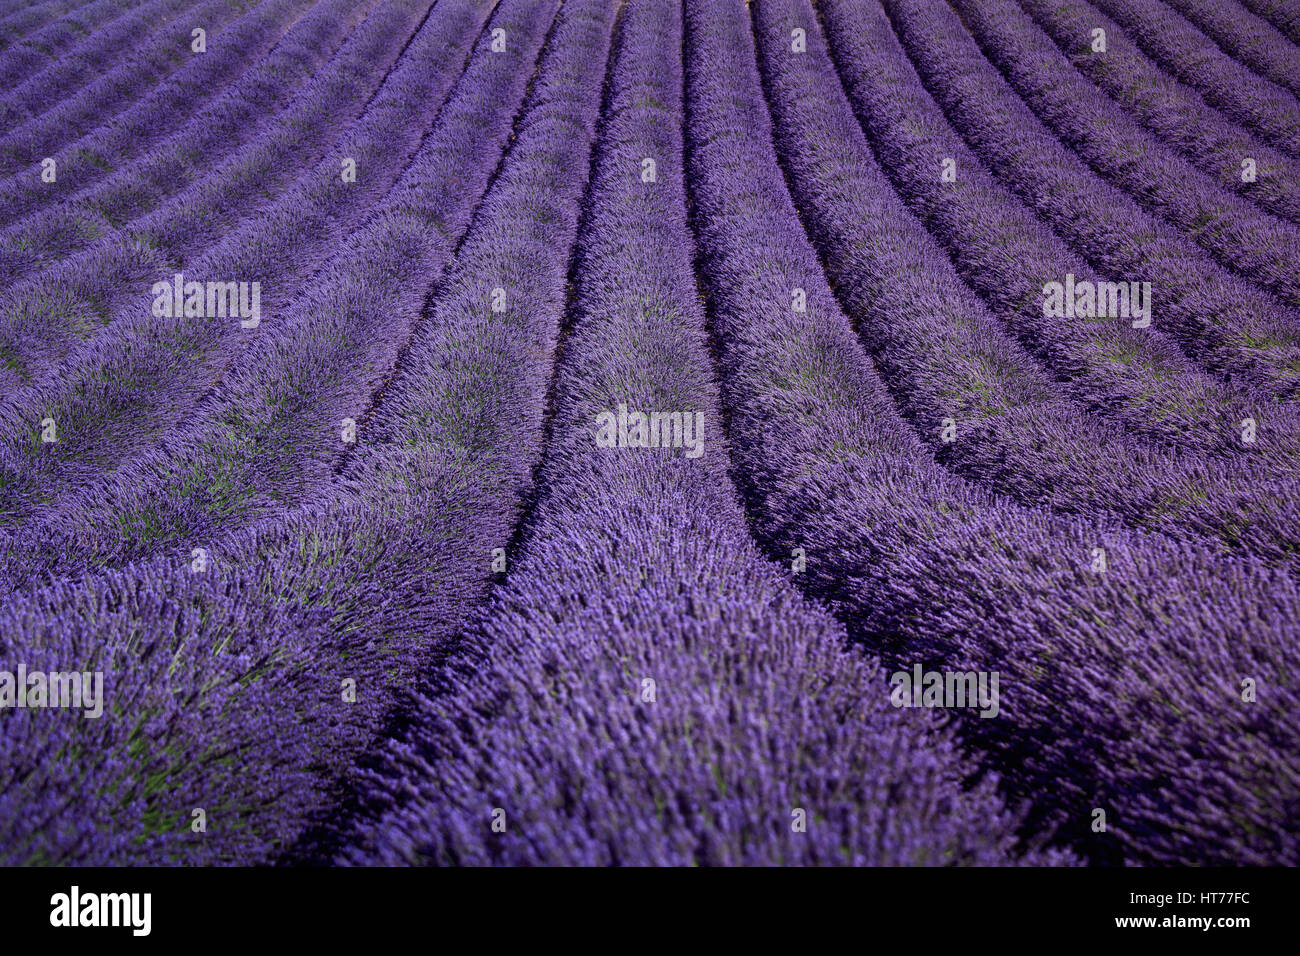 Lavendel Blumen blühenden Felder in endlosen Reihen als Muster oder Textur. Landschaft in der Hochebene von Valensole, Provence, Frankreich. Stockfoto